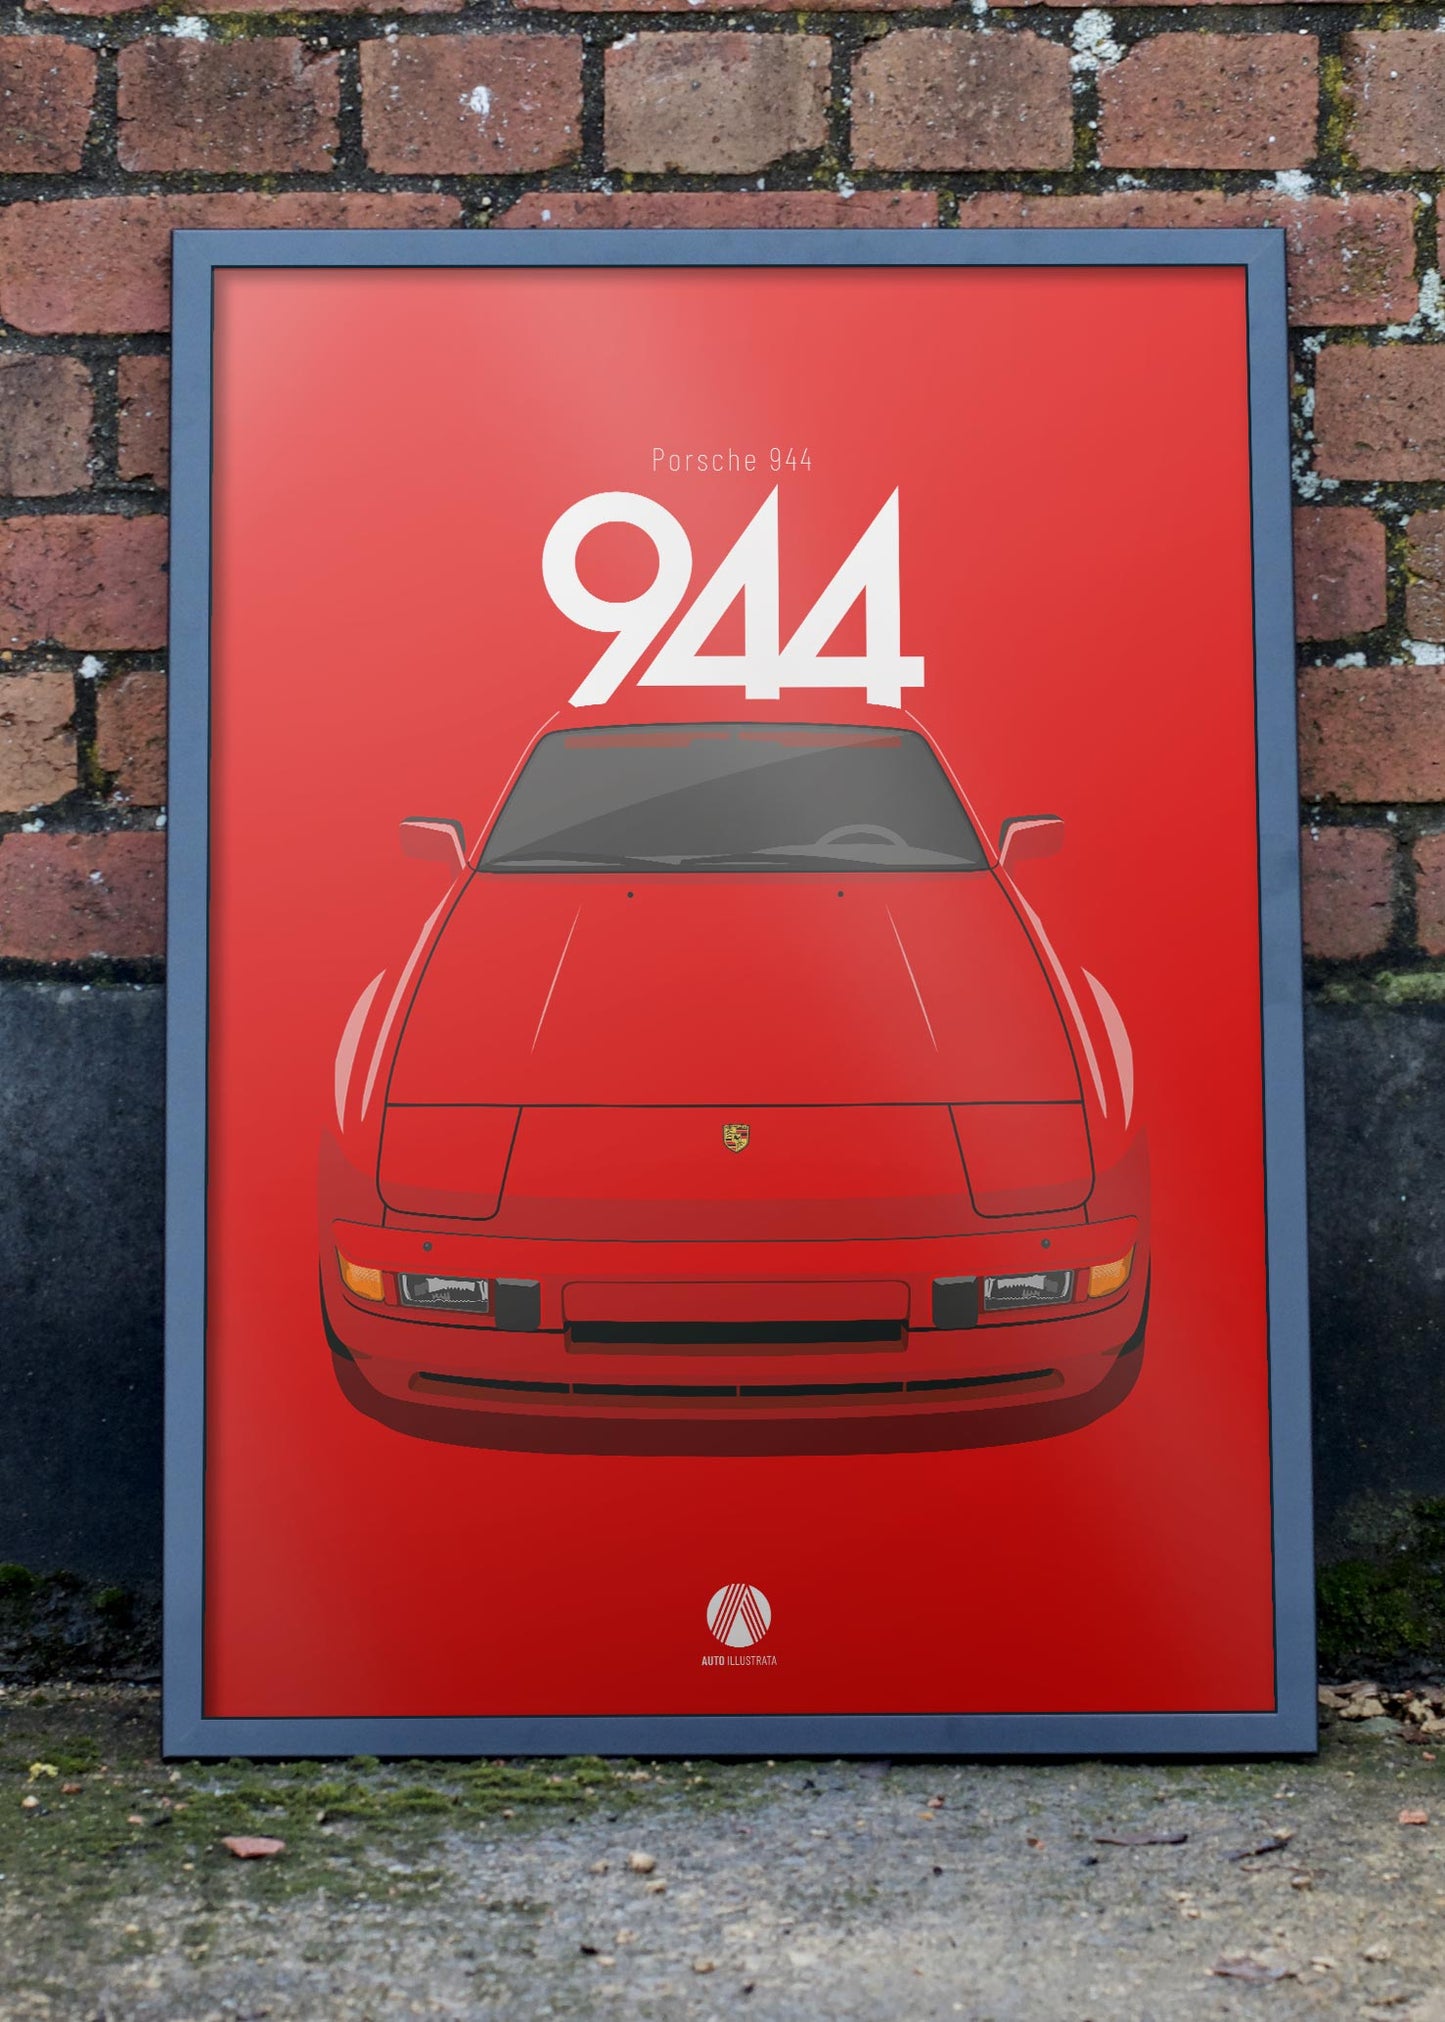 1985 Porsche 944 - 027 Indischrot - poster print